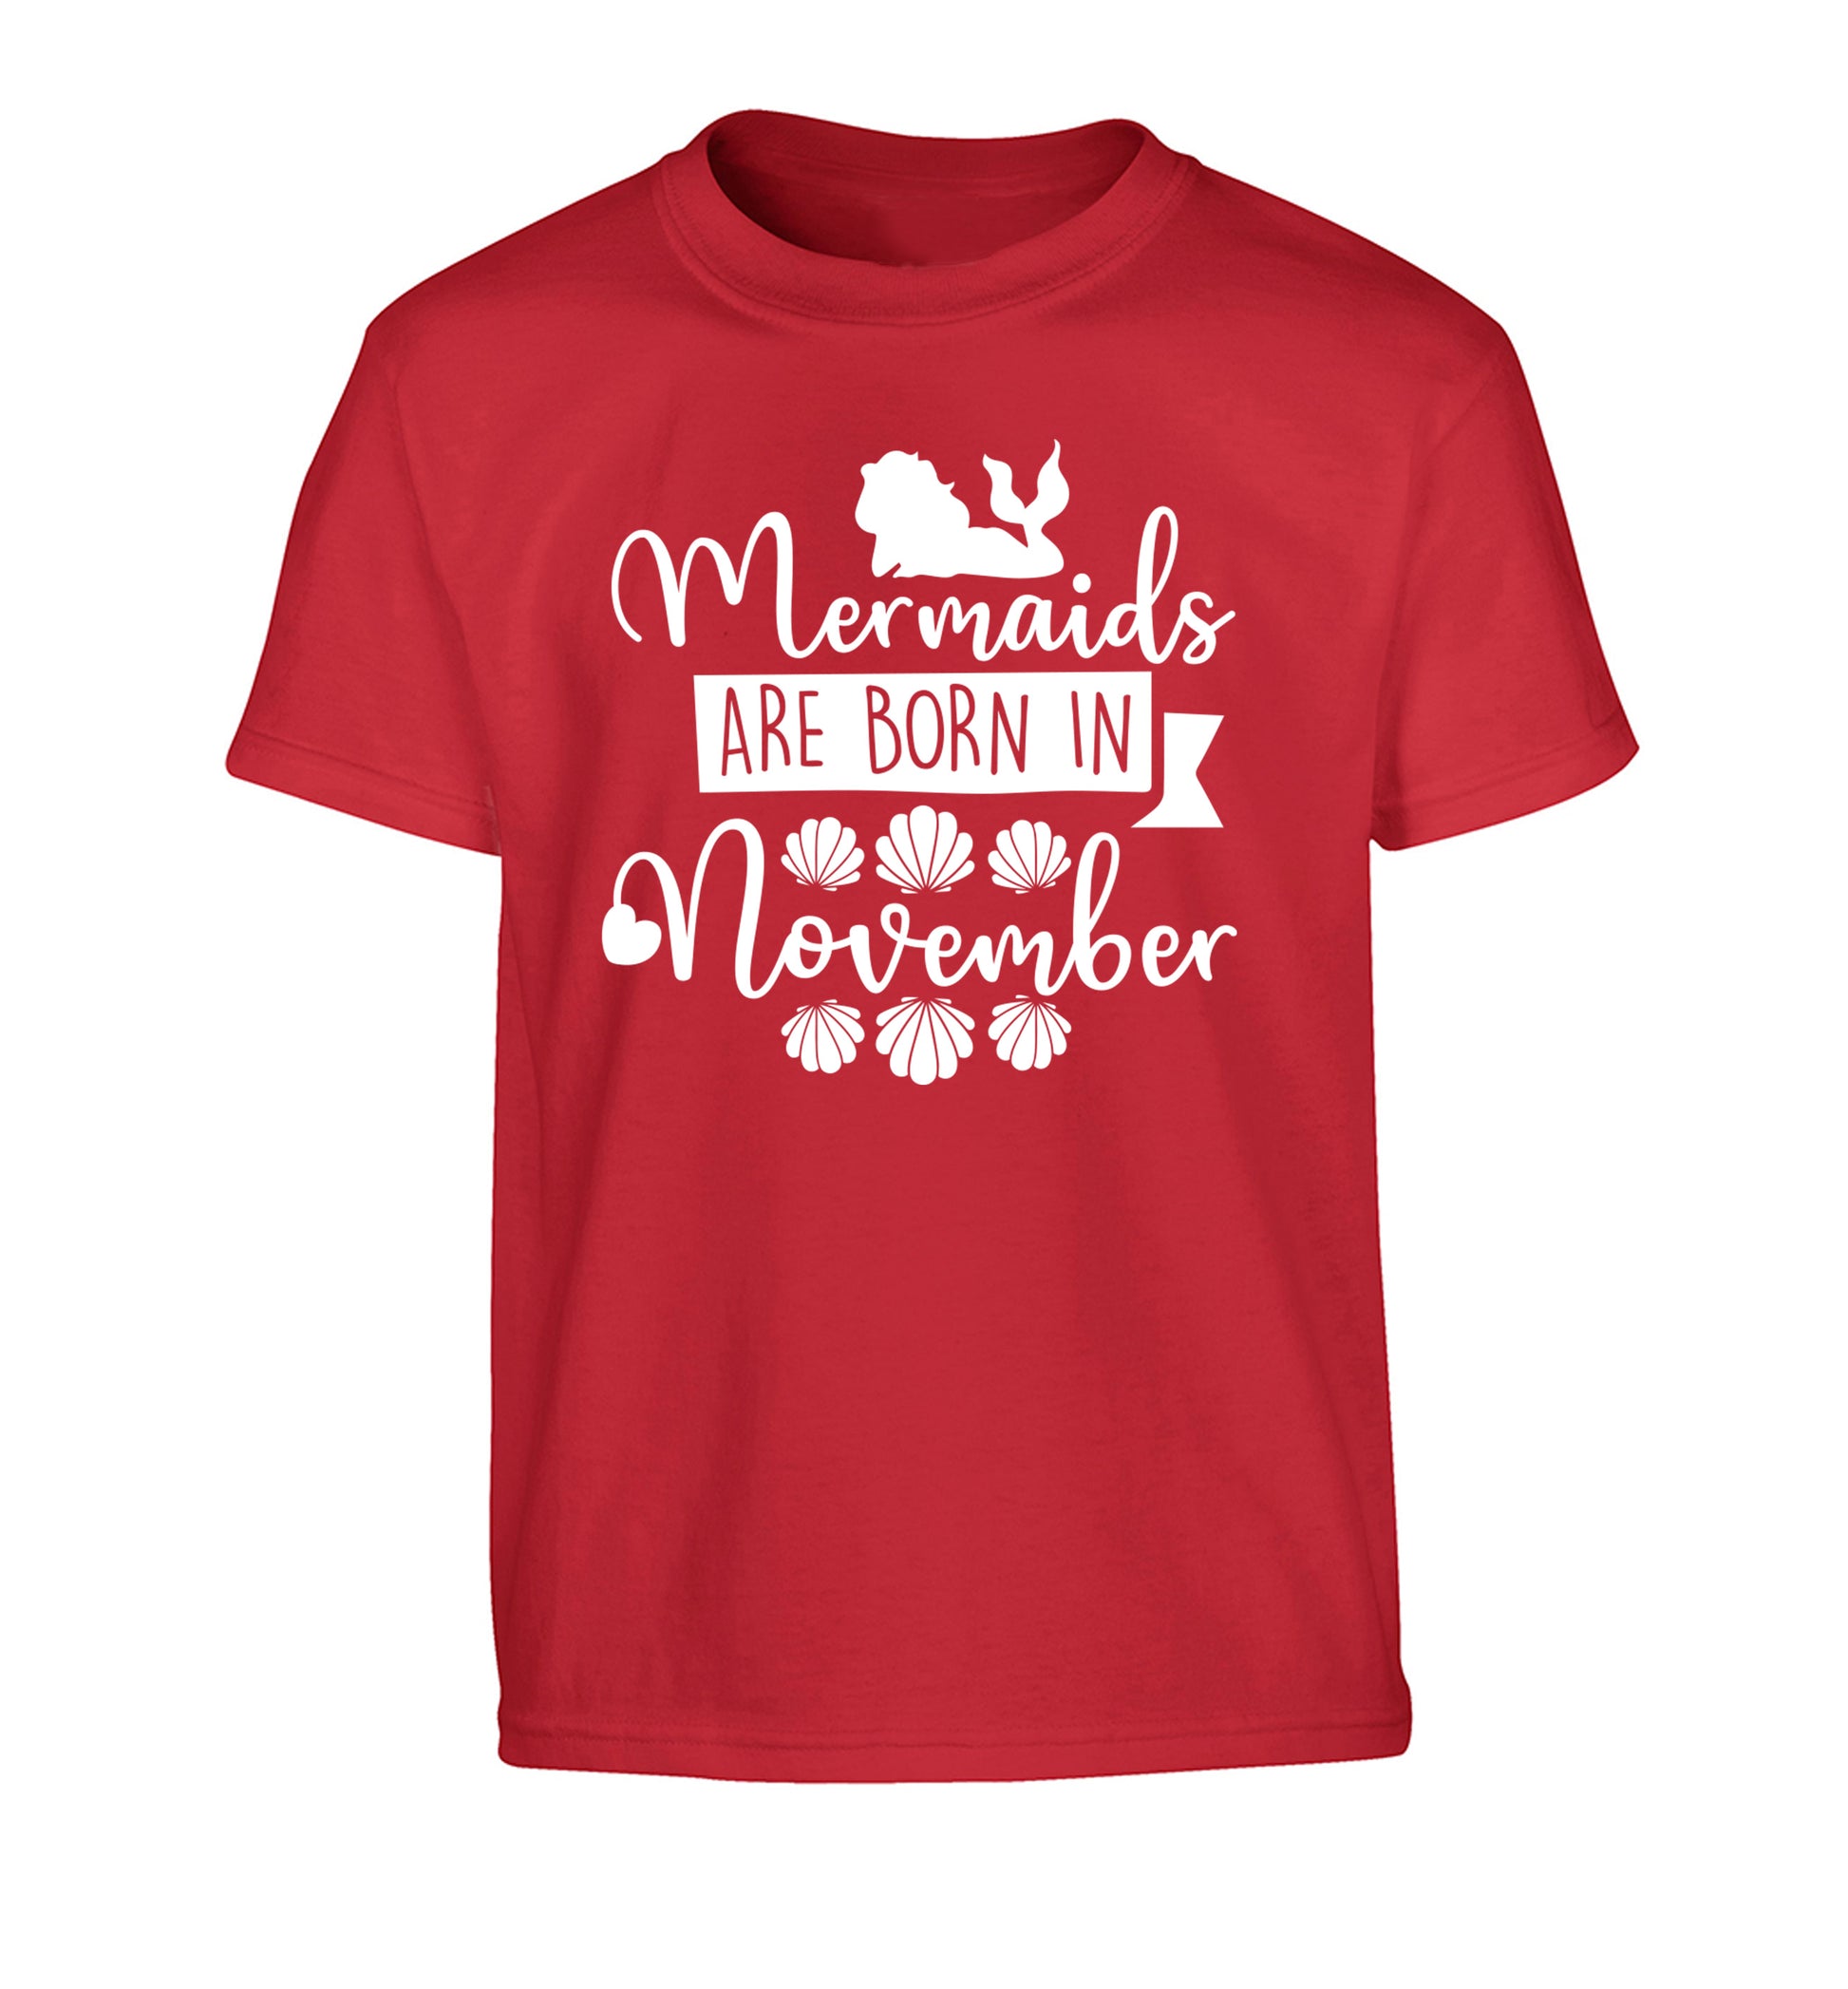 Mermaids are born in November Children's red Tshirt 12-13 Years